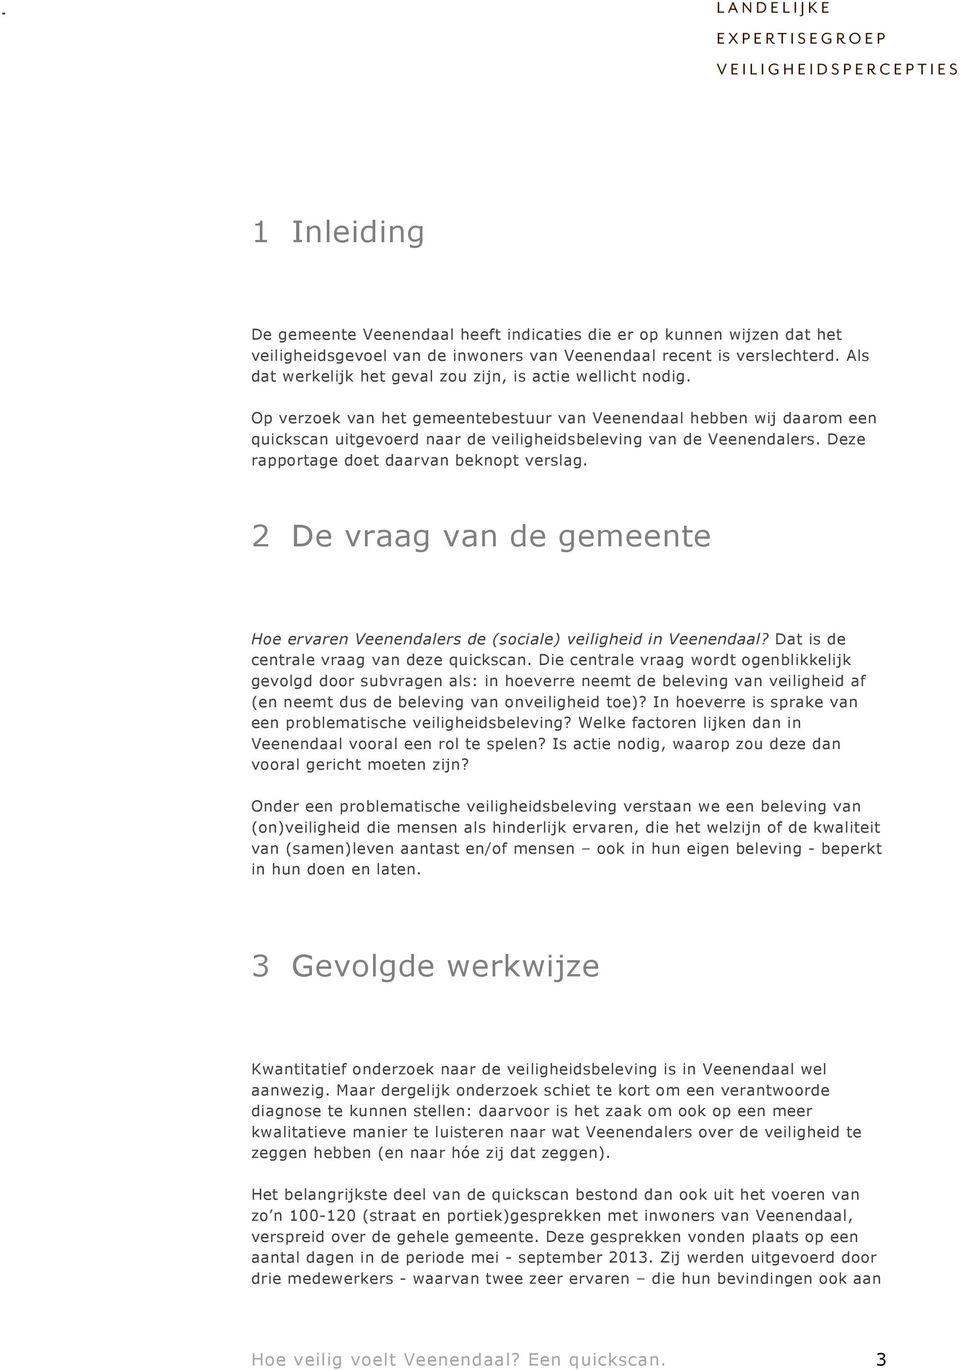 Op verzoek van het gemeentebestuur van Veenendaal hebben wij daarom een quickscan uitgevoerd naar de veiligheidsbeleving van de Veenendalers. Deze rapportage doet daarvan beknopt verslag.